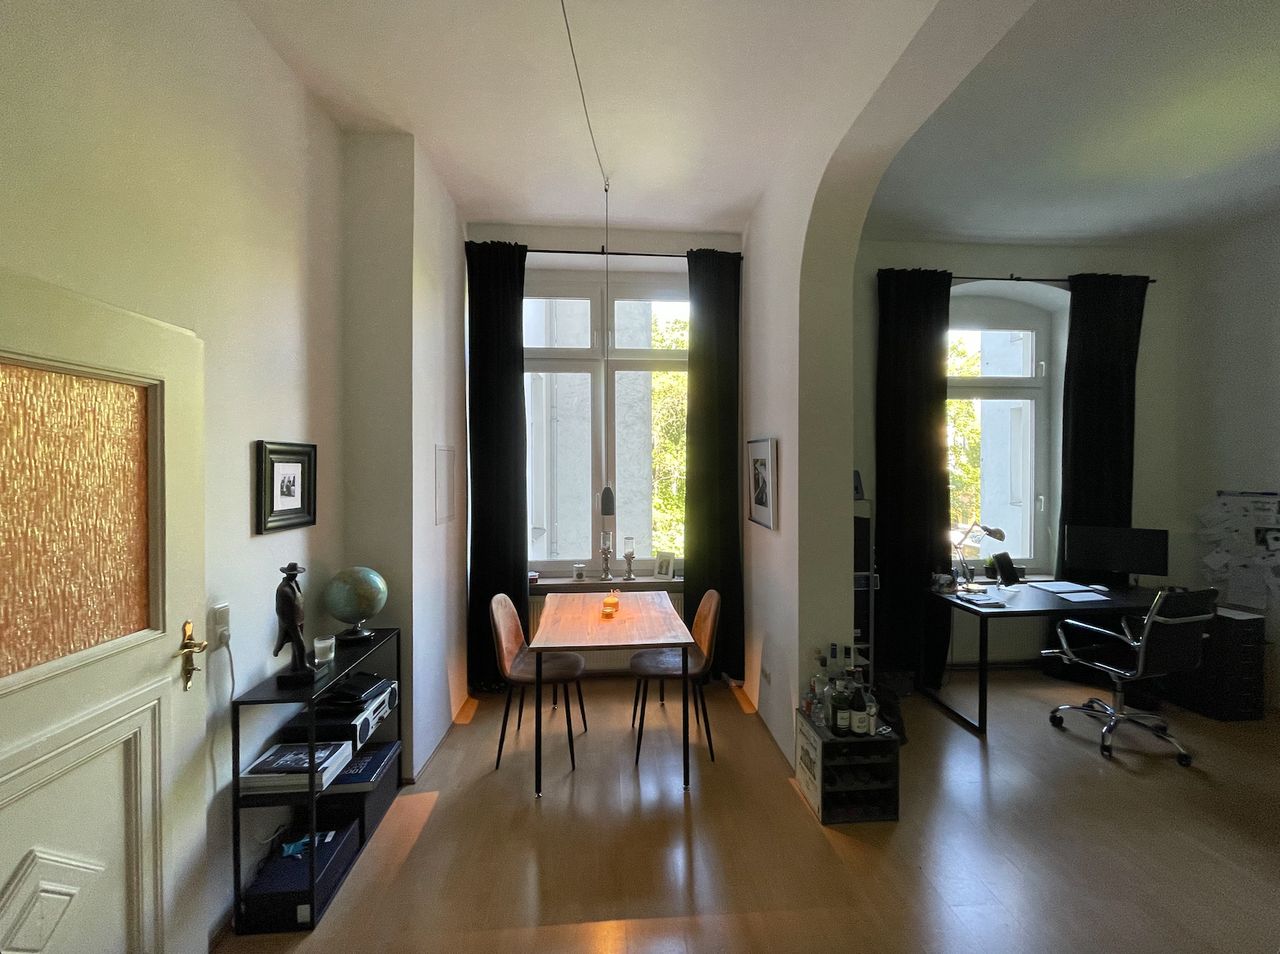 Charming apartment in Winsviertel (Prenzlauer Berg)